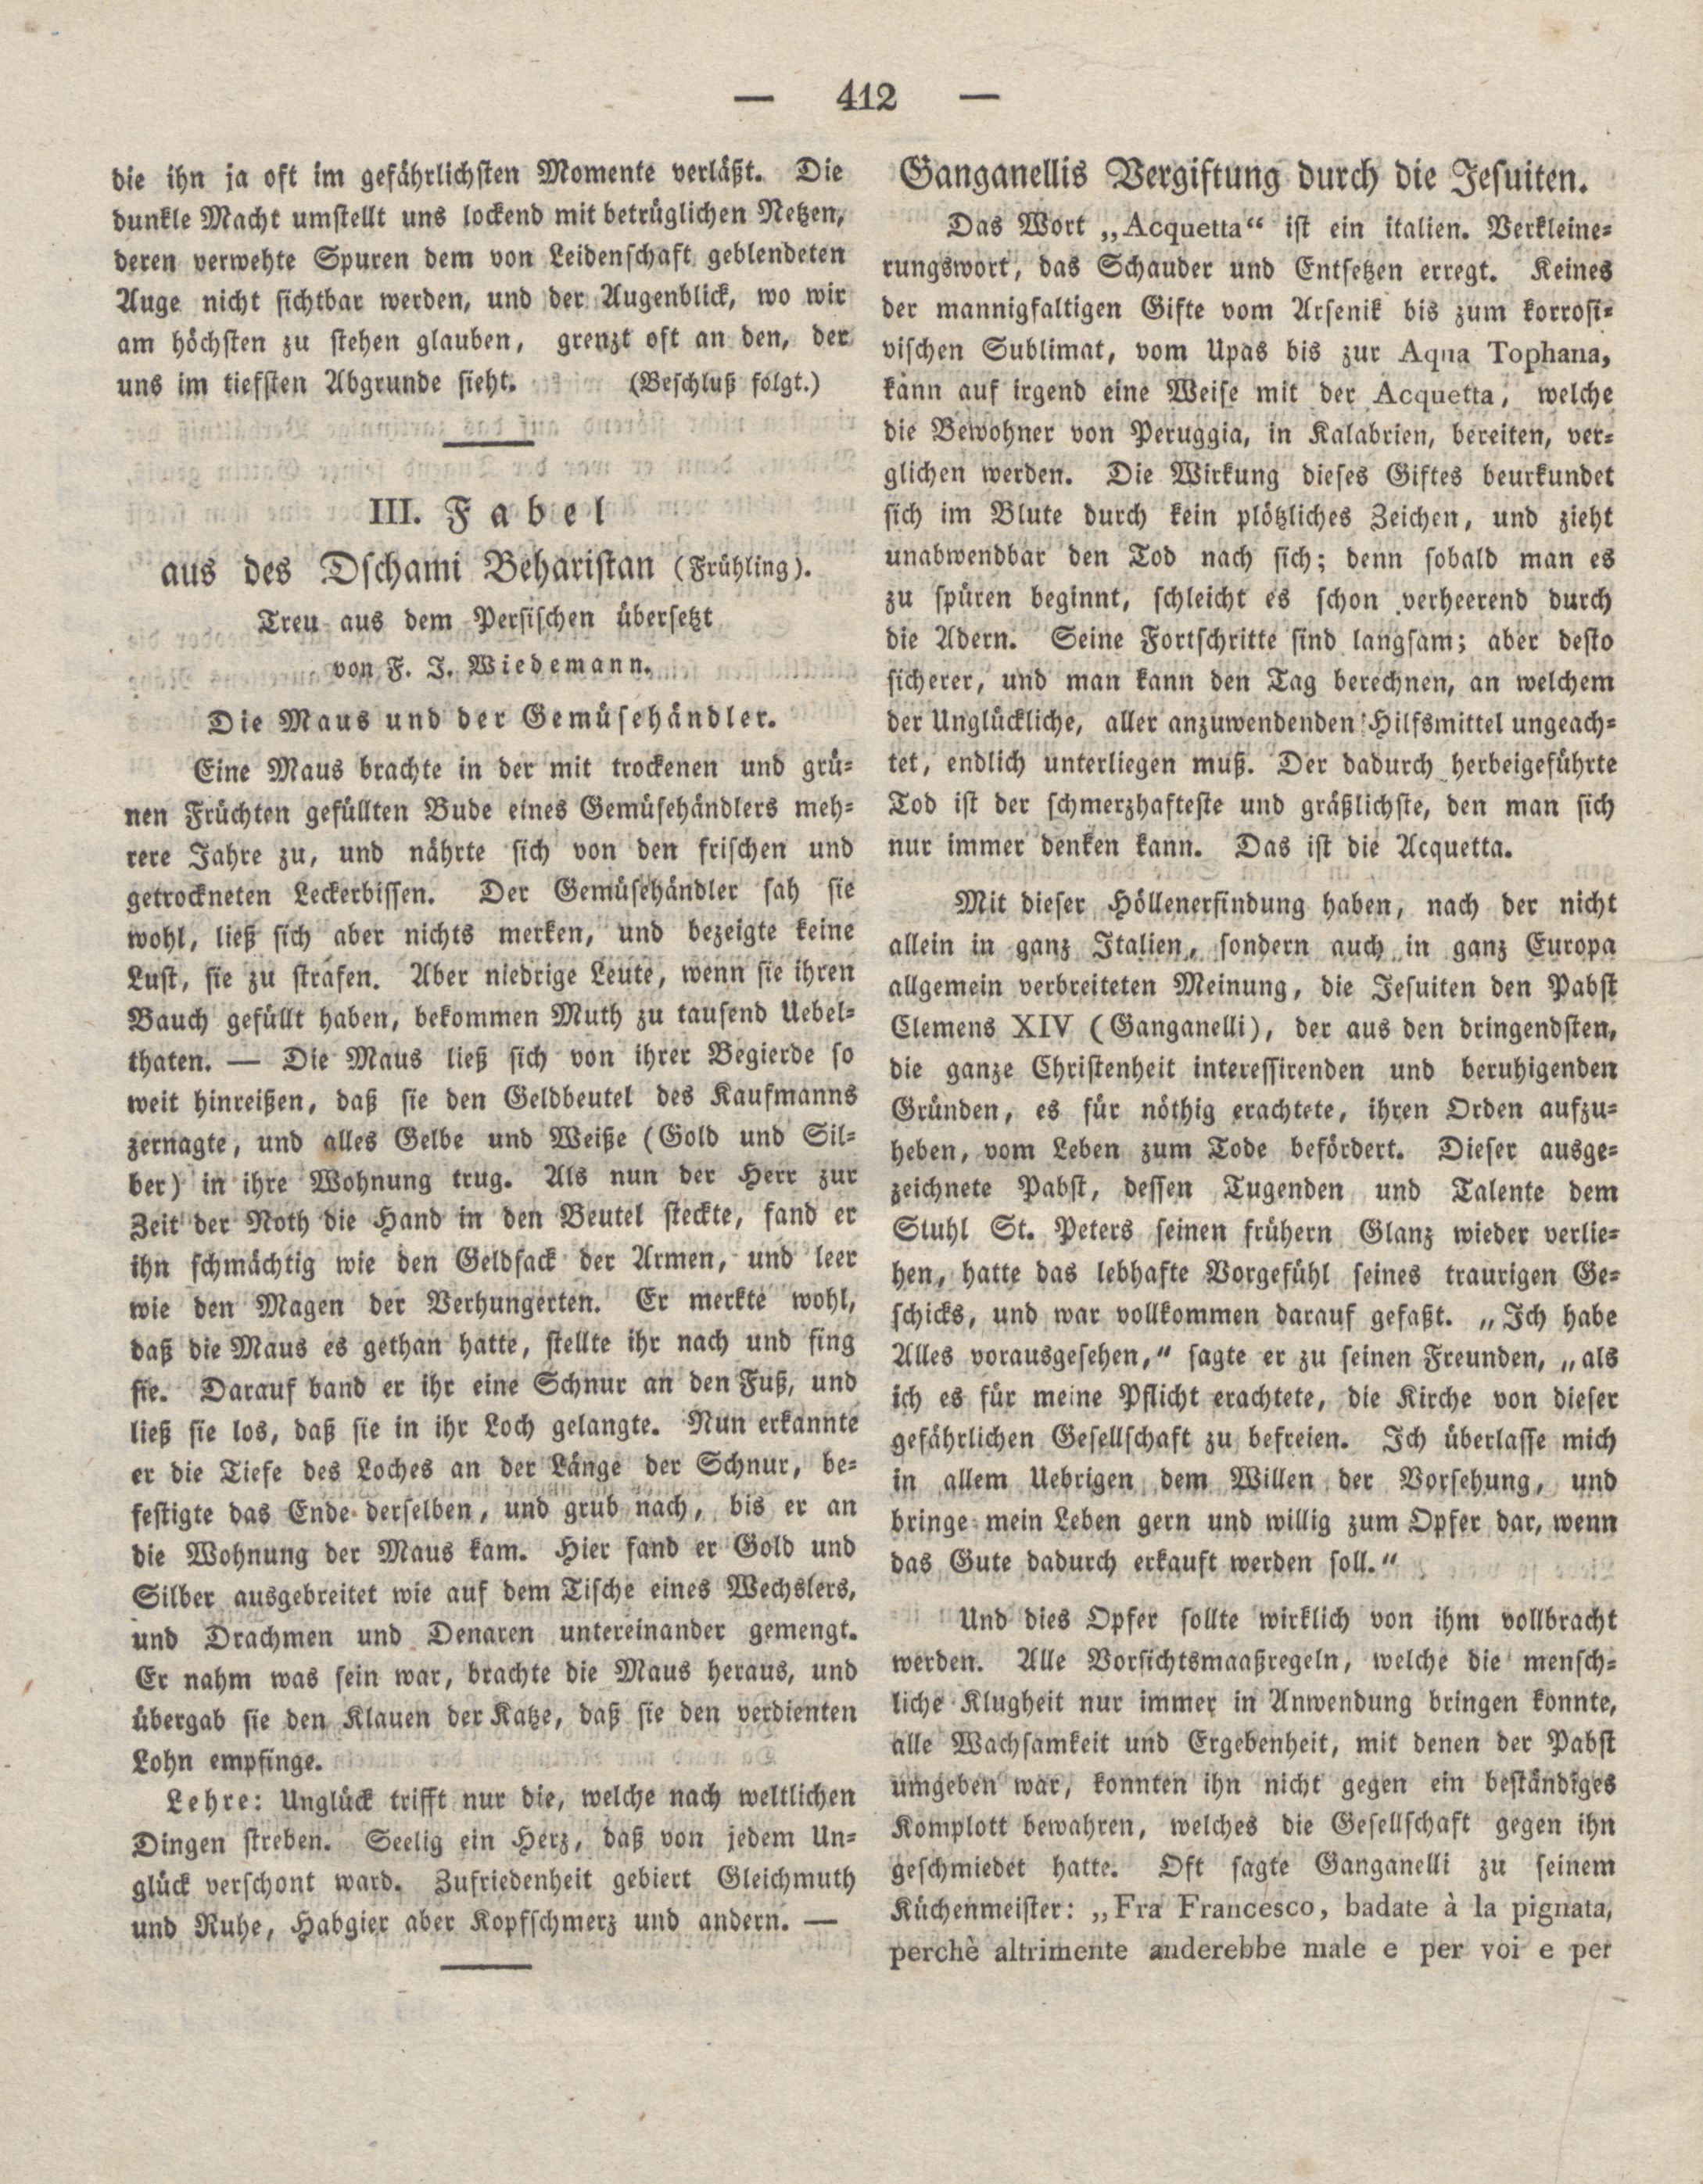 Die Maus und der Gemüsehändler (1829) | 1. (412) Haupttext